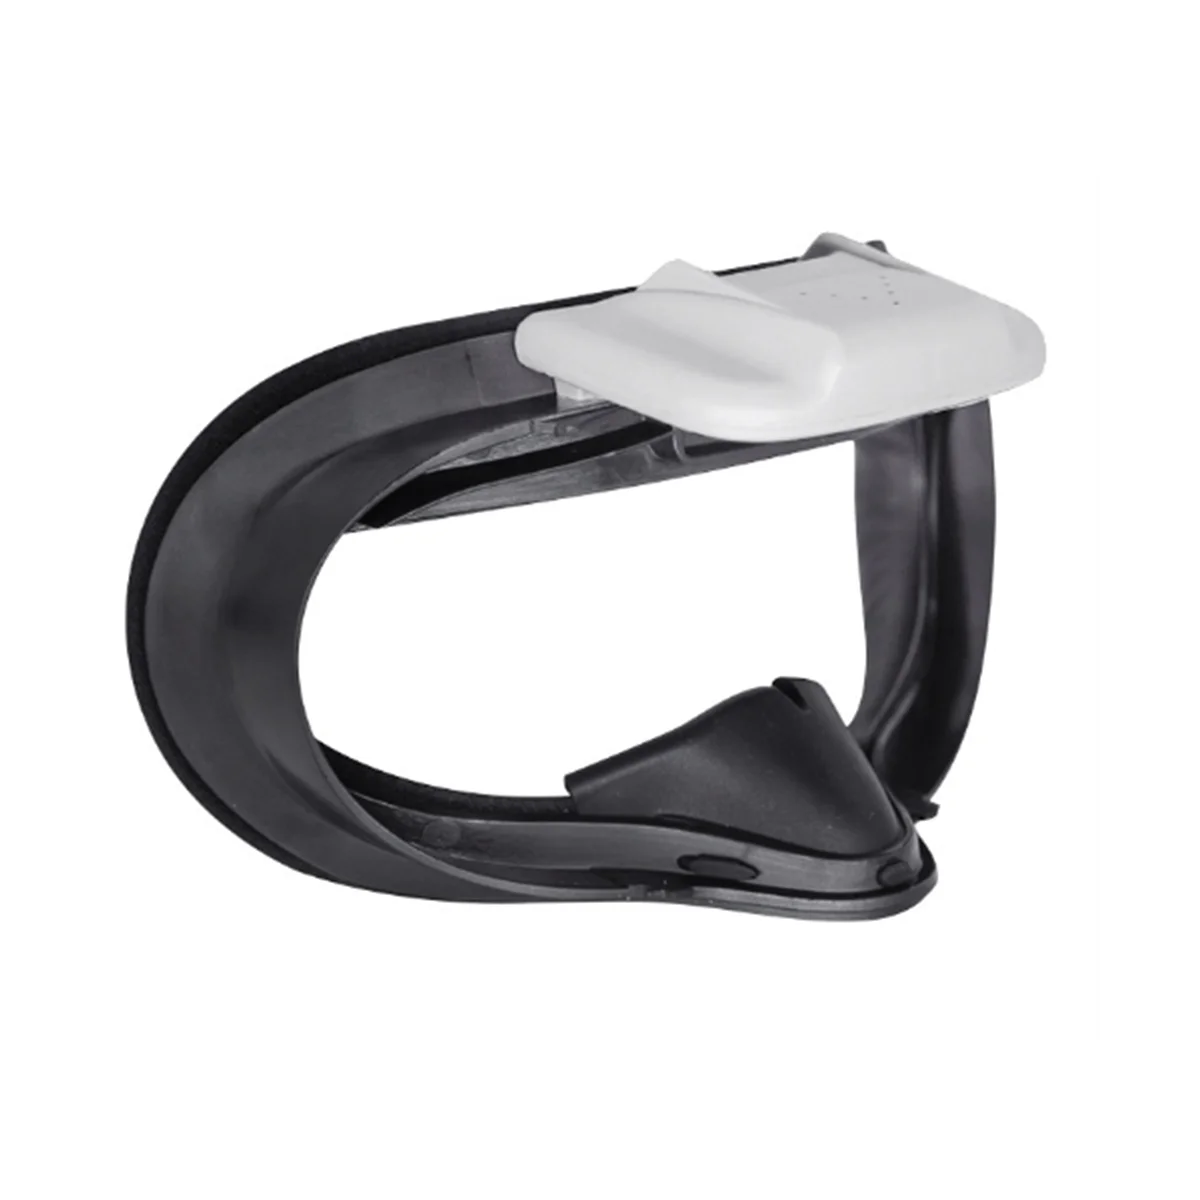 

Охлаждающий вентилятор для Oculus Quest 2 VR гарнитуры, активная вентиляция, циркуляция воздуха, дышащая подушка интерфейса для лица